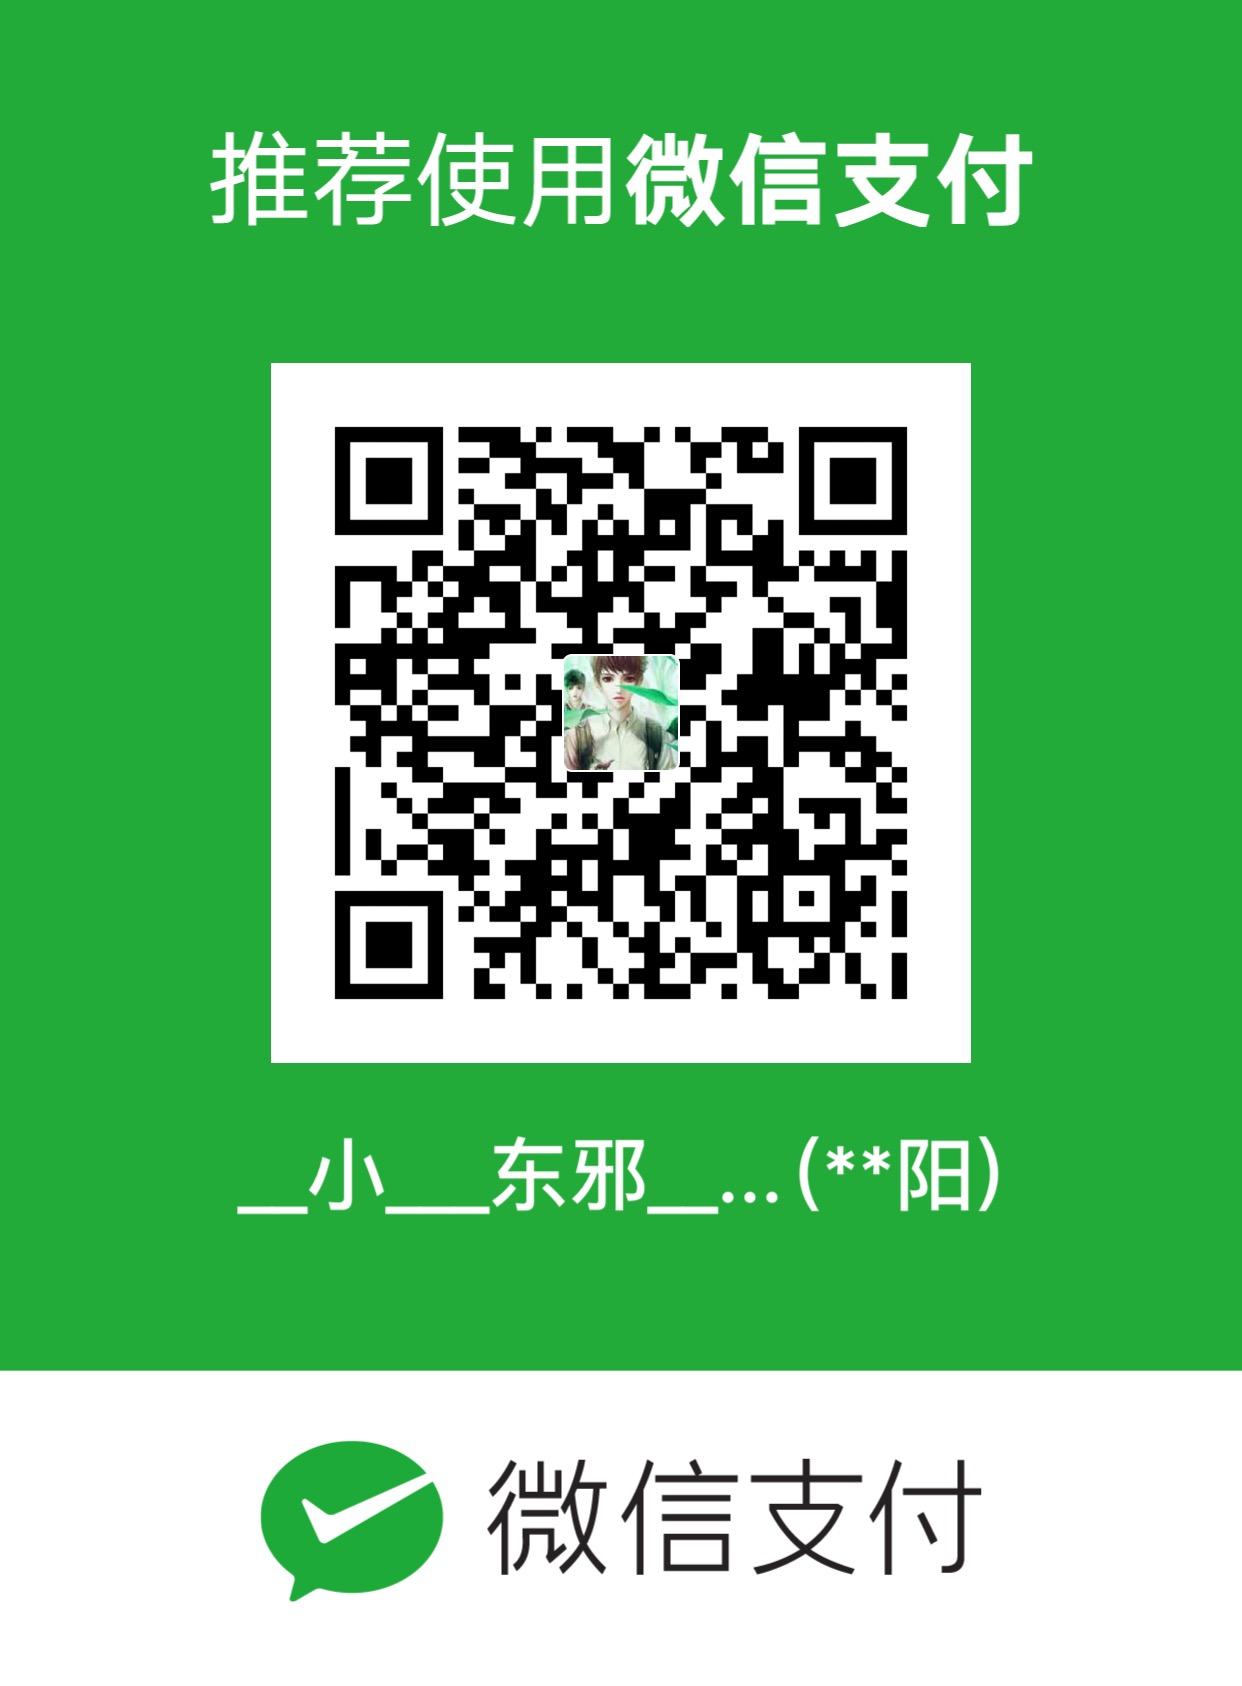 小东邪 - Demon WeChat Pay